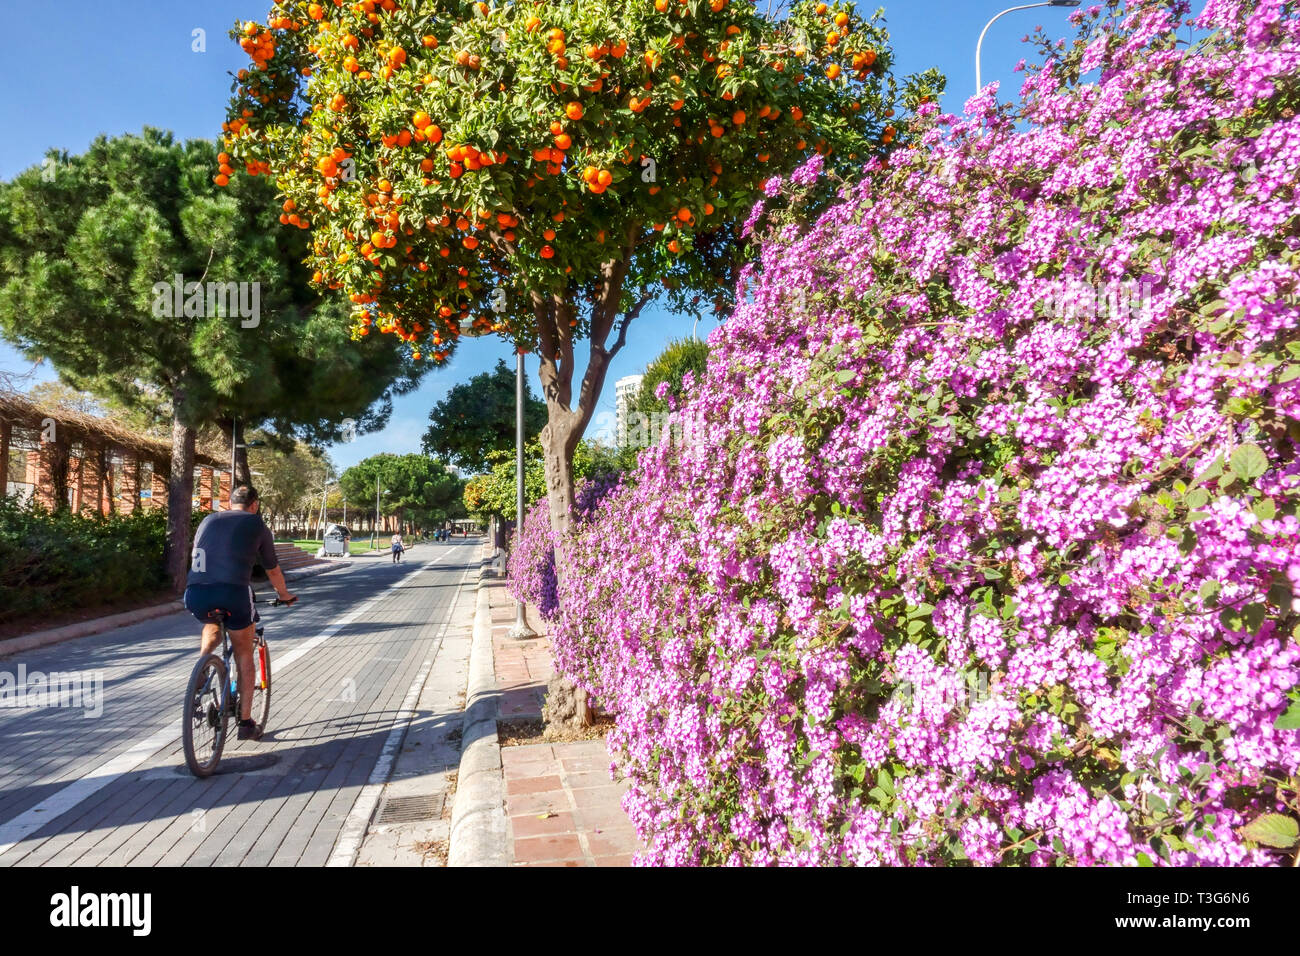 Valencia Gärten, Orangenbaum, Radtouren auf blühenden Radweg ehemaliger Turia Fluss Spanien Biker Valencia Spanien Europa Lifestyle Active Life Stockfoto